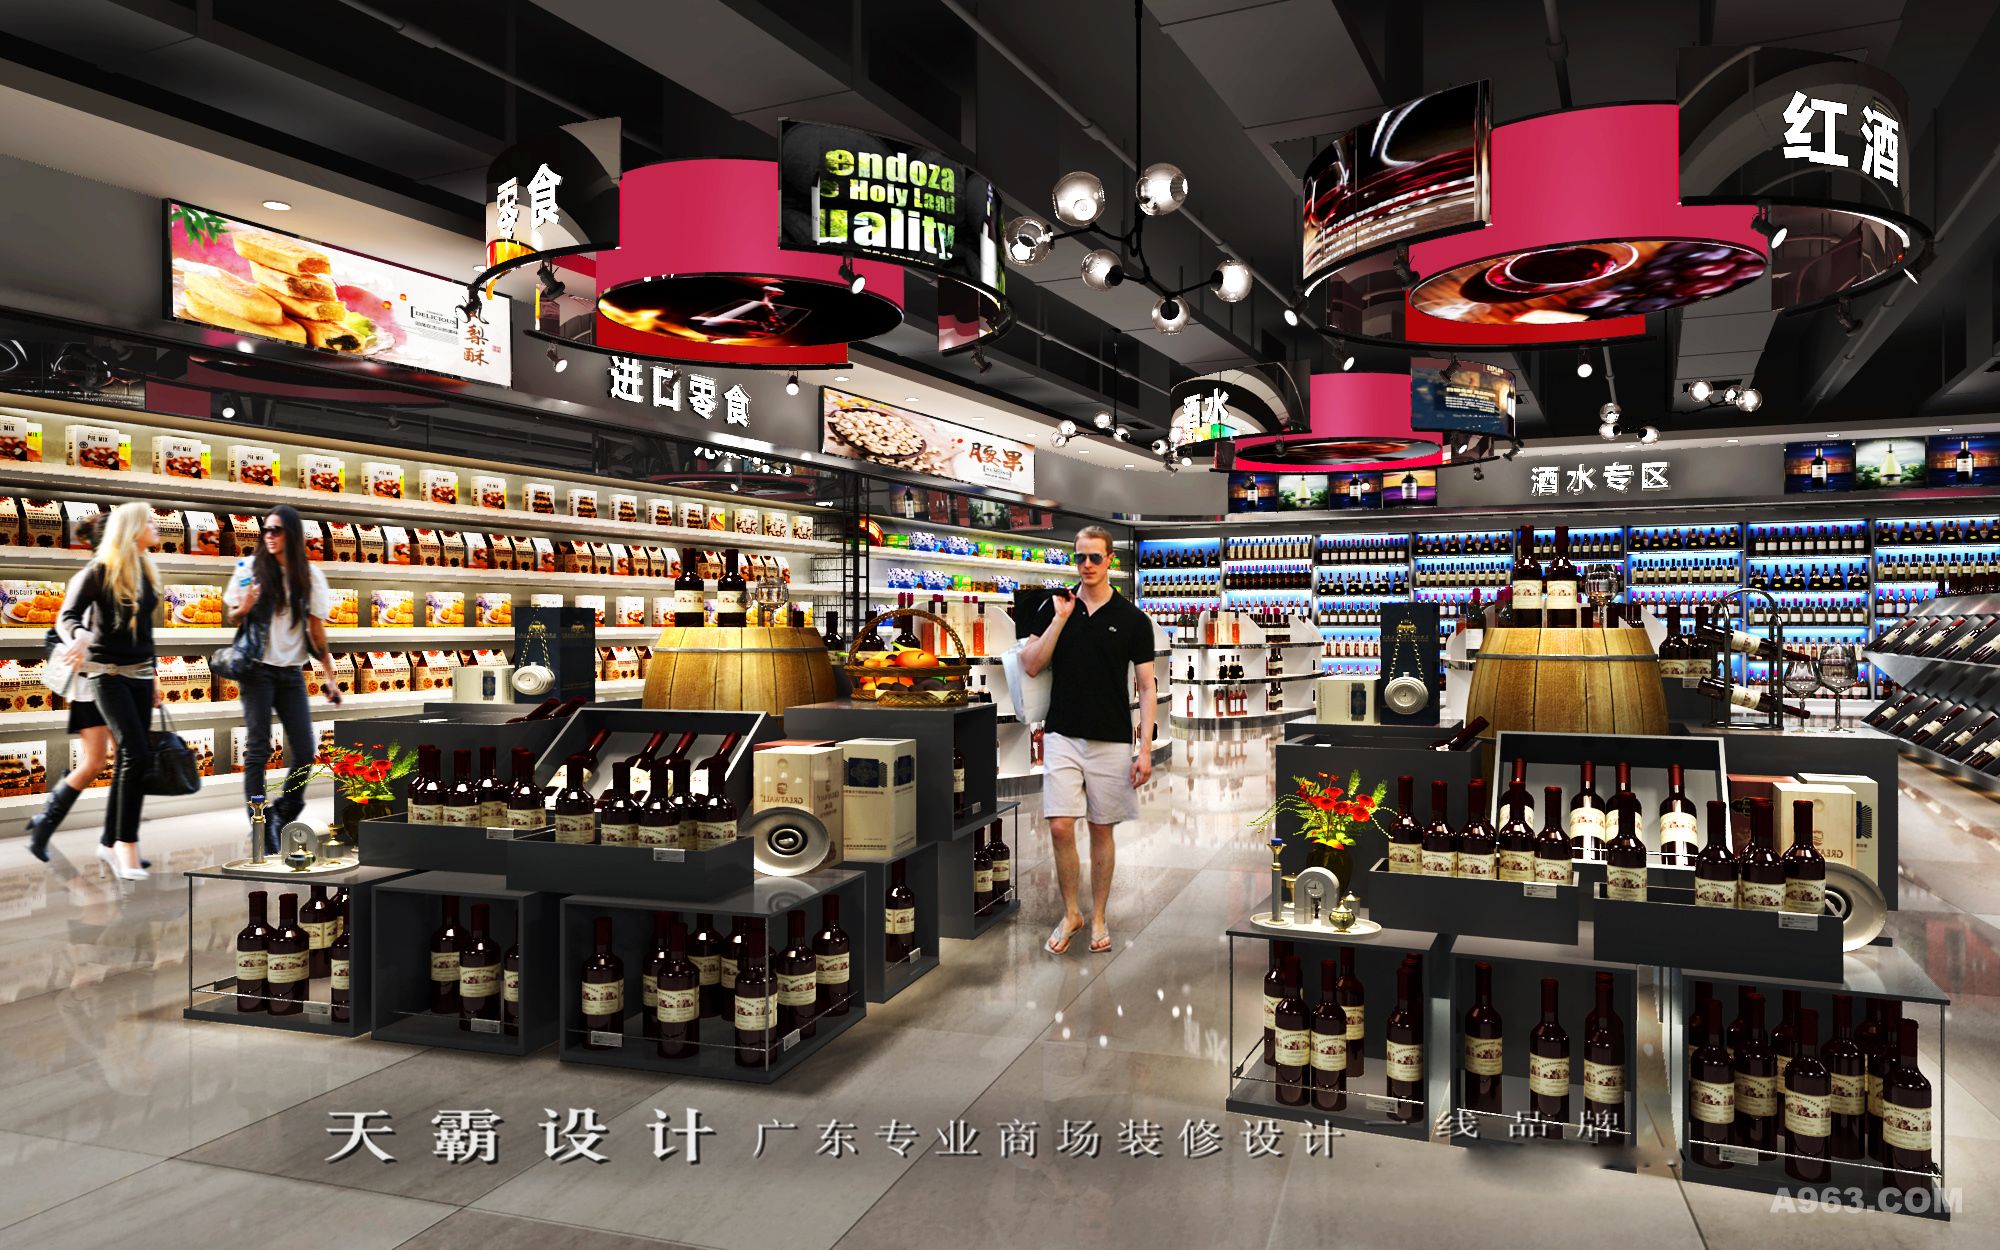 视觉效果良好的购物中心装修设计效果图欣赏-广东天霸设计作品